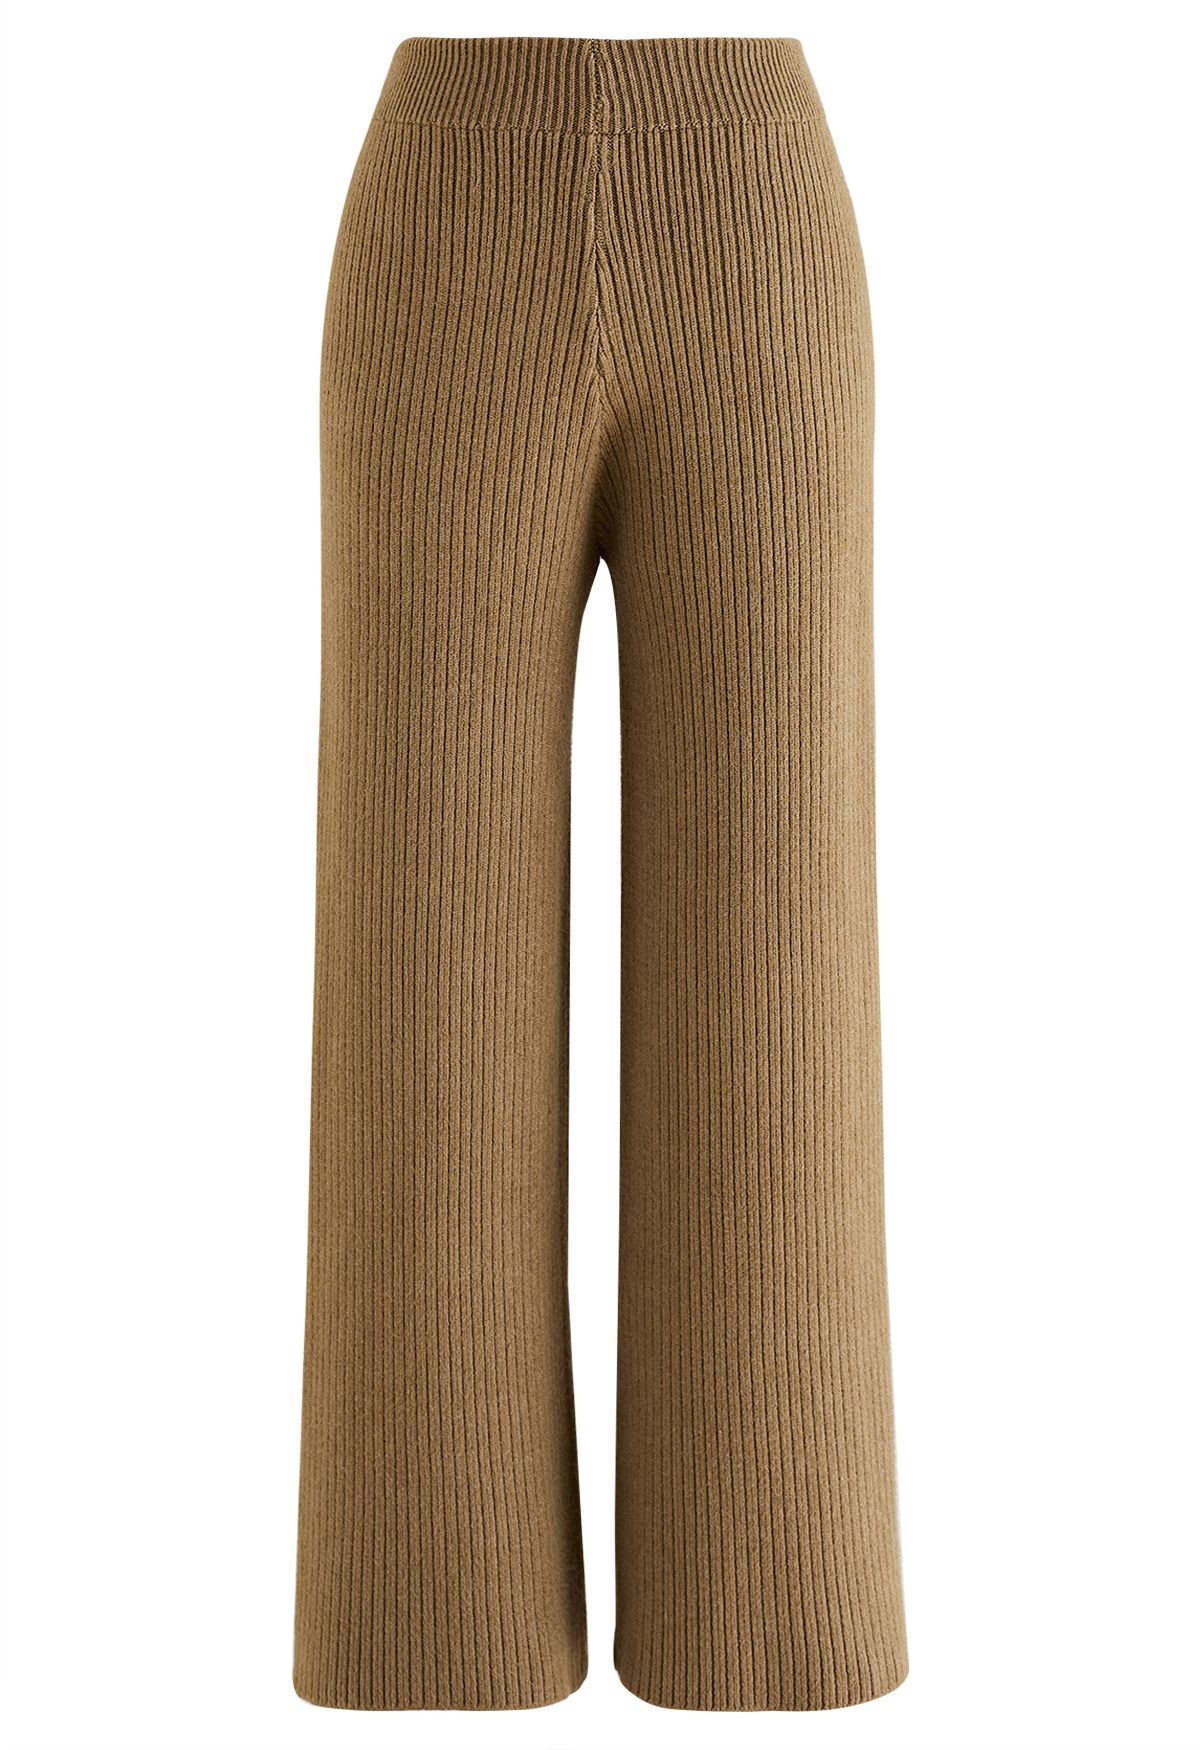 Conjunto asimétrico de suéter y pantalón con manga de murciélago en color caramelo